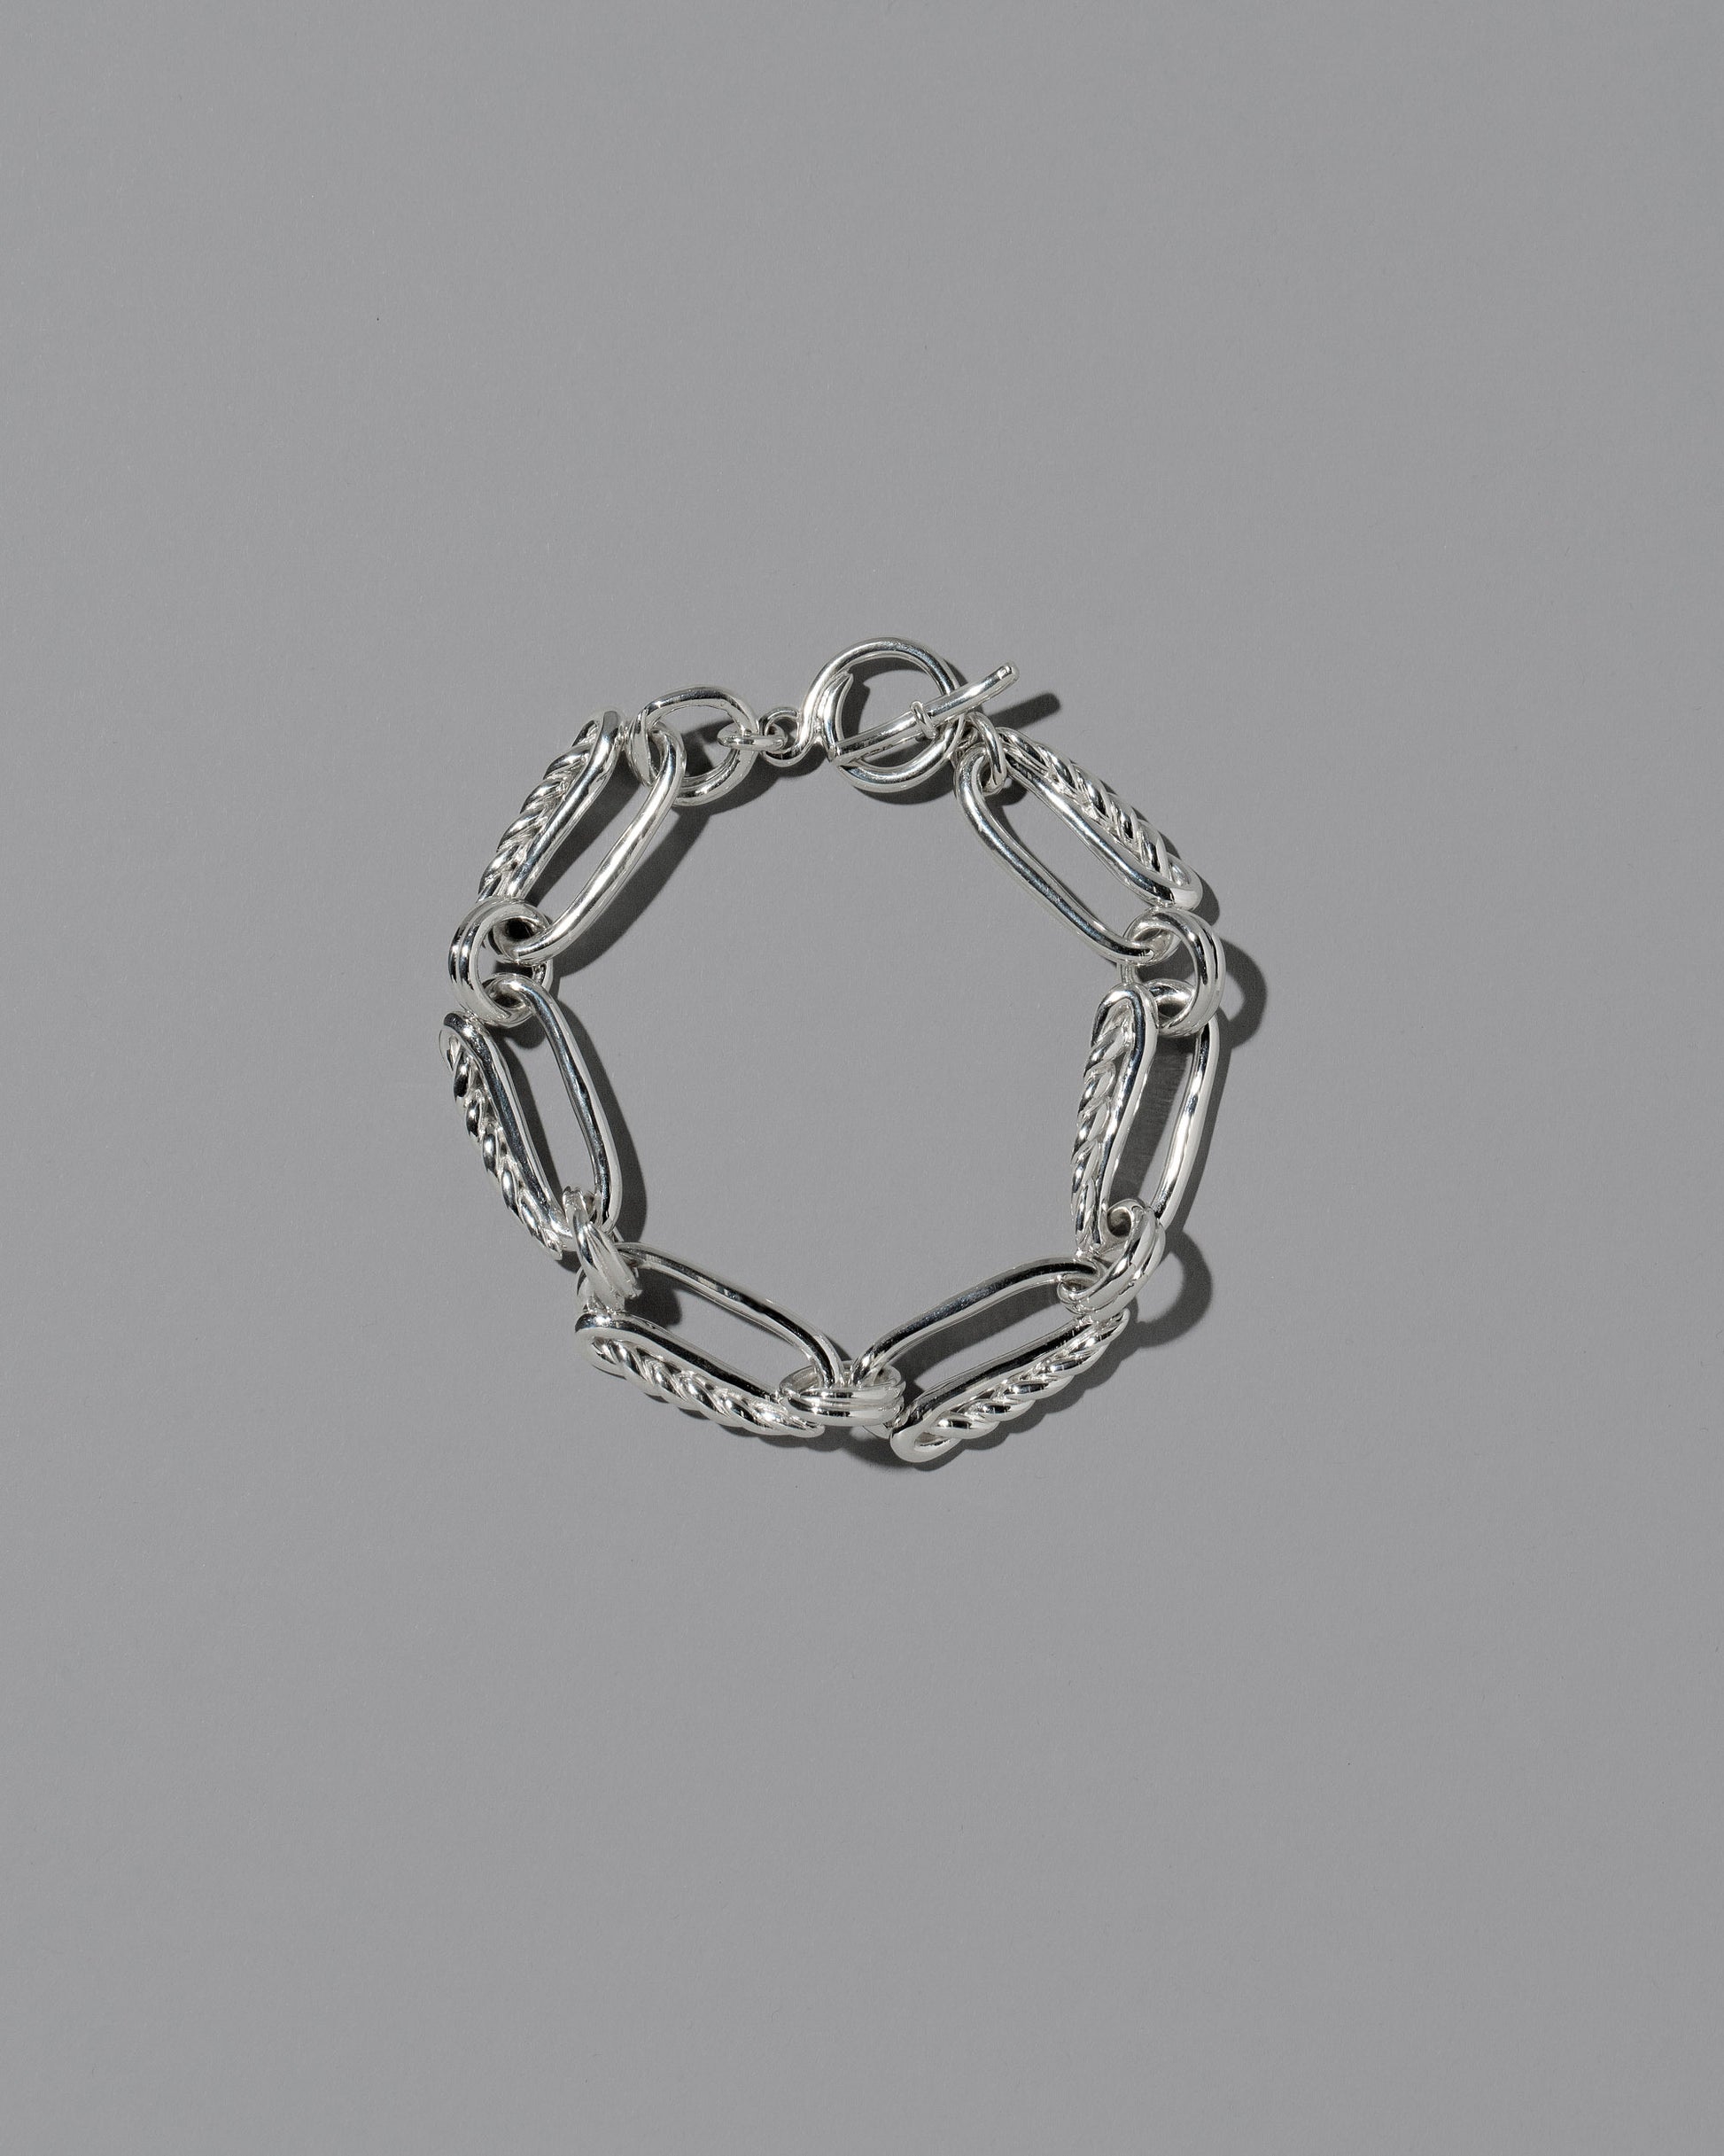 CRZM Sterling Silver Ophiolite Bracelet on light color background.